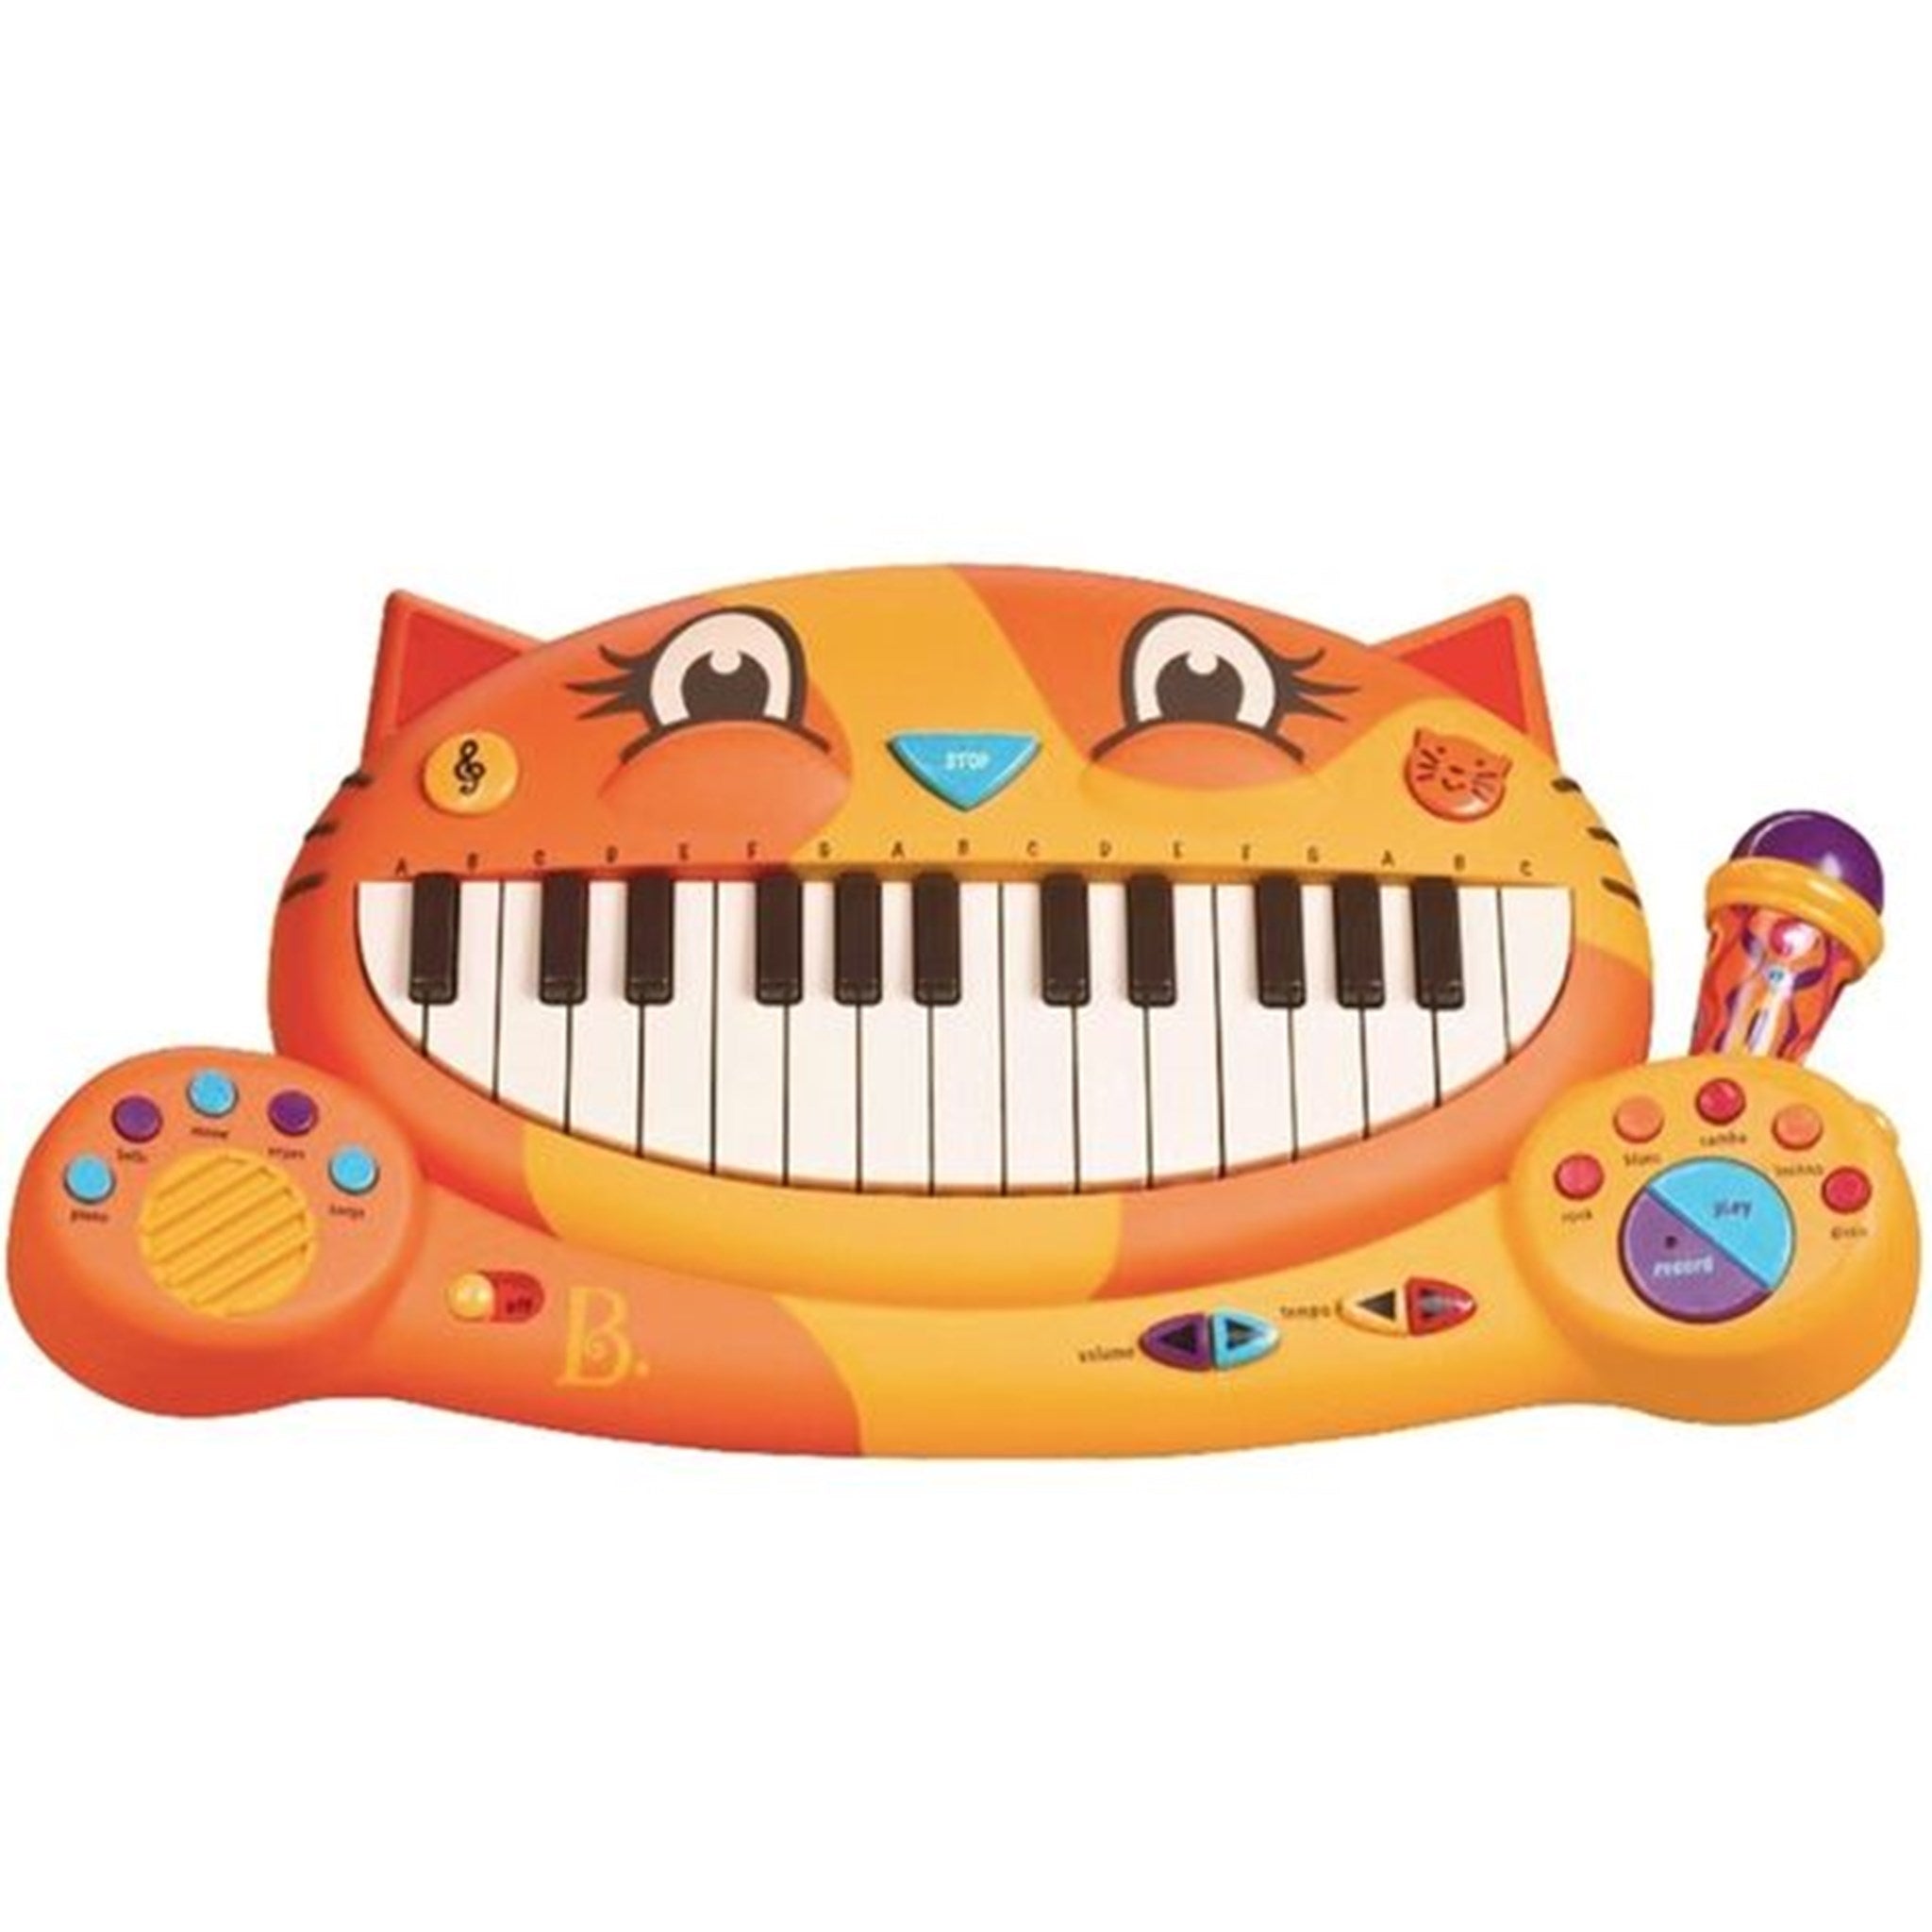 B-toys Meowsic Keyboard